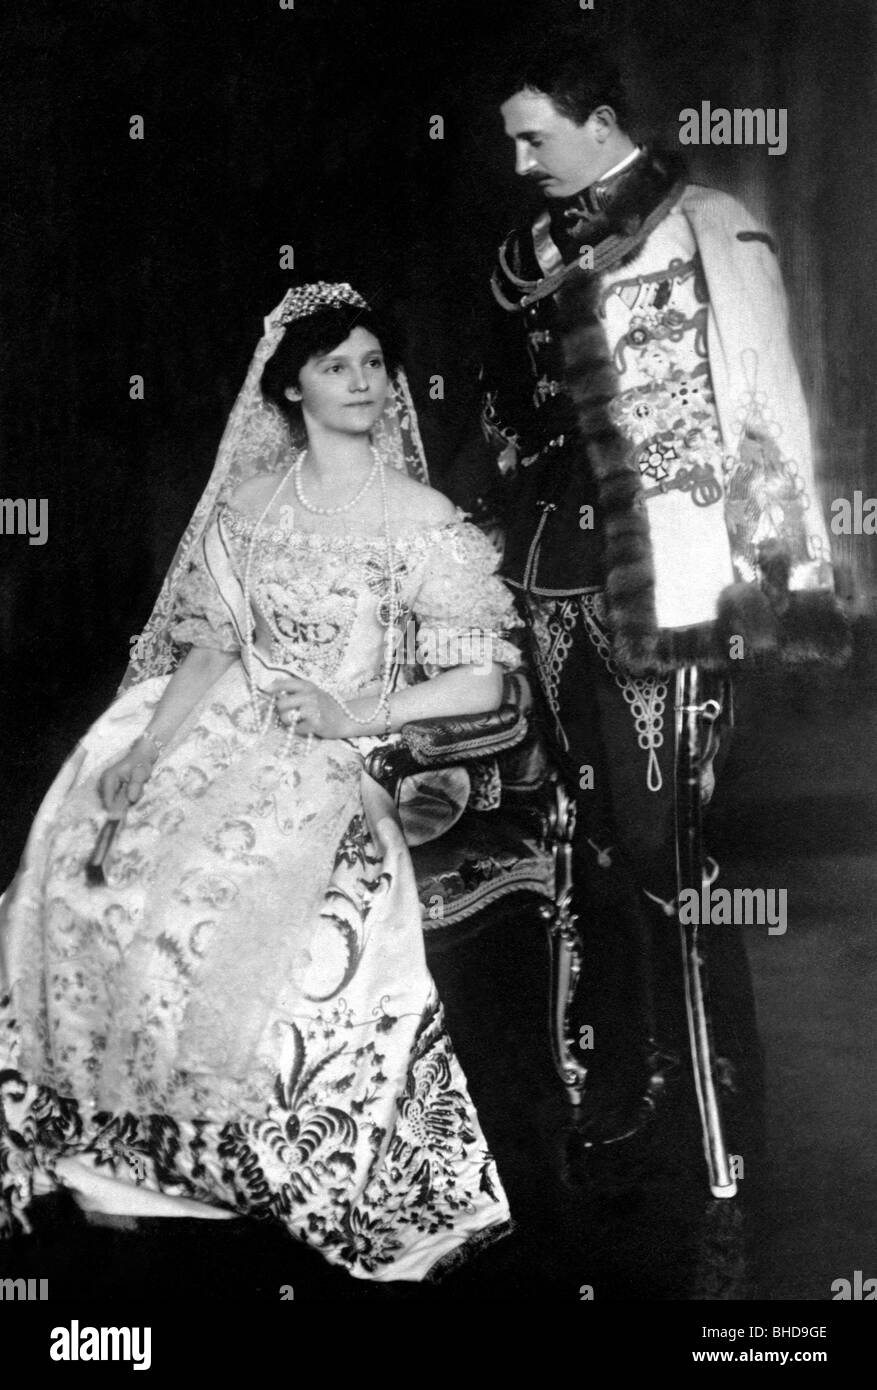 Carlo i, 17.8.1887 - 1.4.1922, Imperatore d'Austria 1916 - 1918, in uniforme di gala ungherese, con sua moglie Zita, cartolina fotografica, foto di Kardos Noeverek, Budapest, 1916, Foto Stock